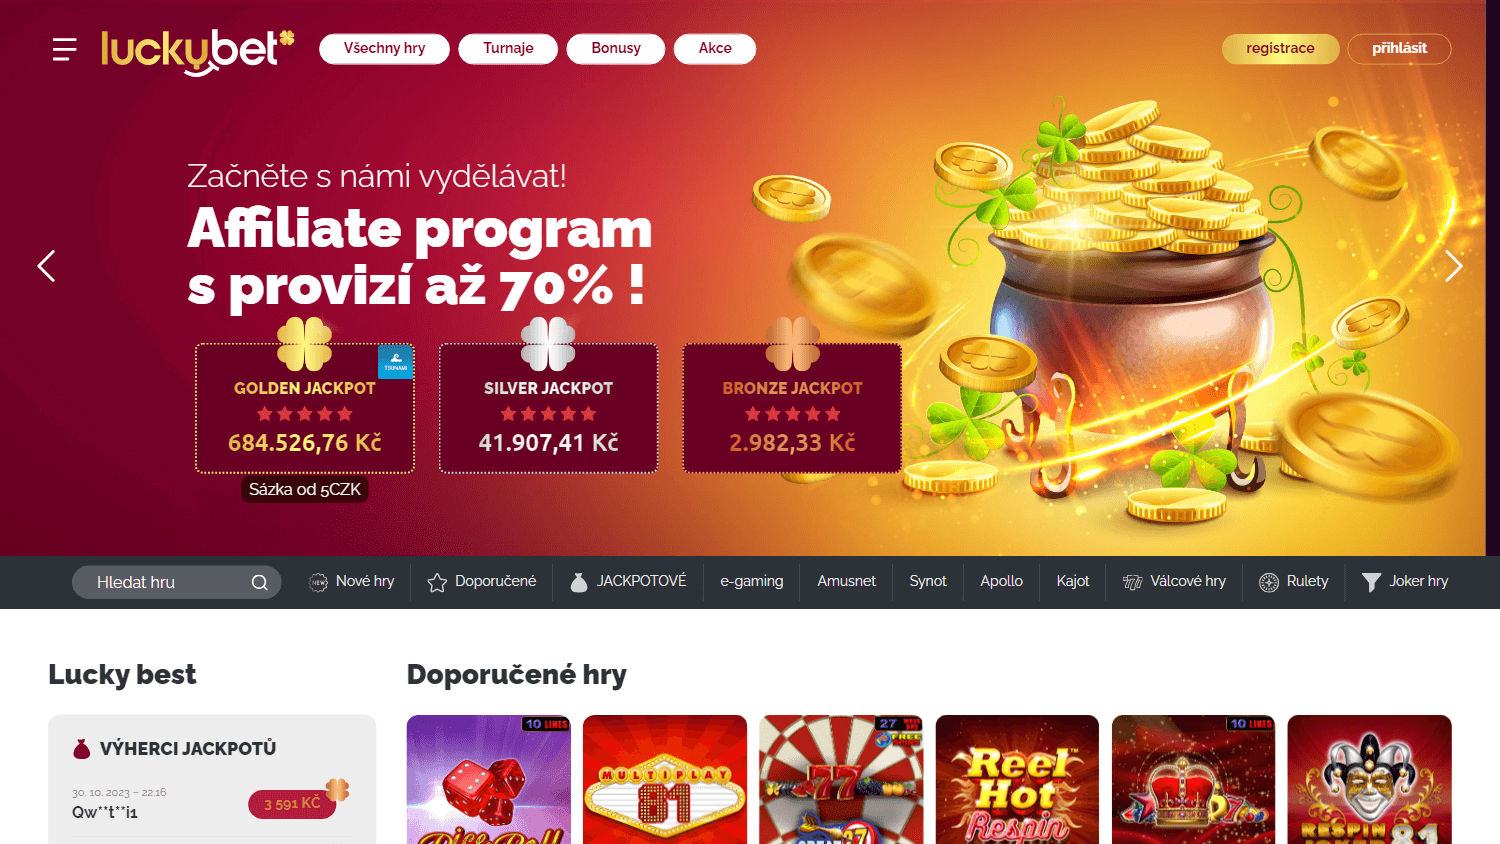 luckybet_casino_homepage_desktop